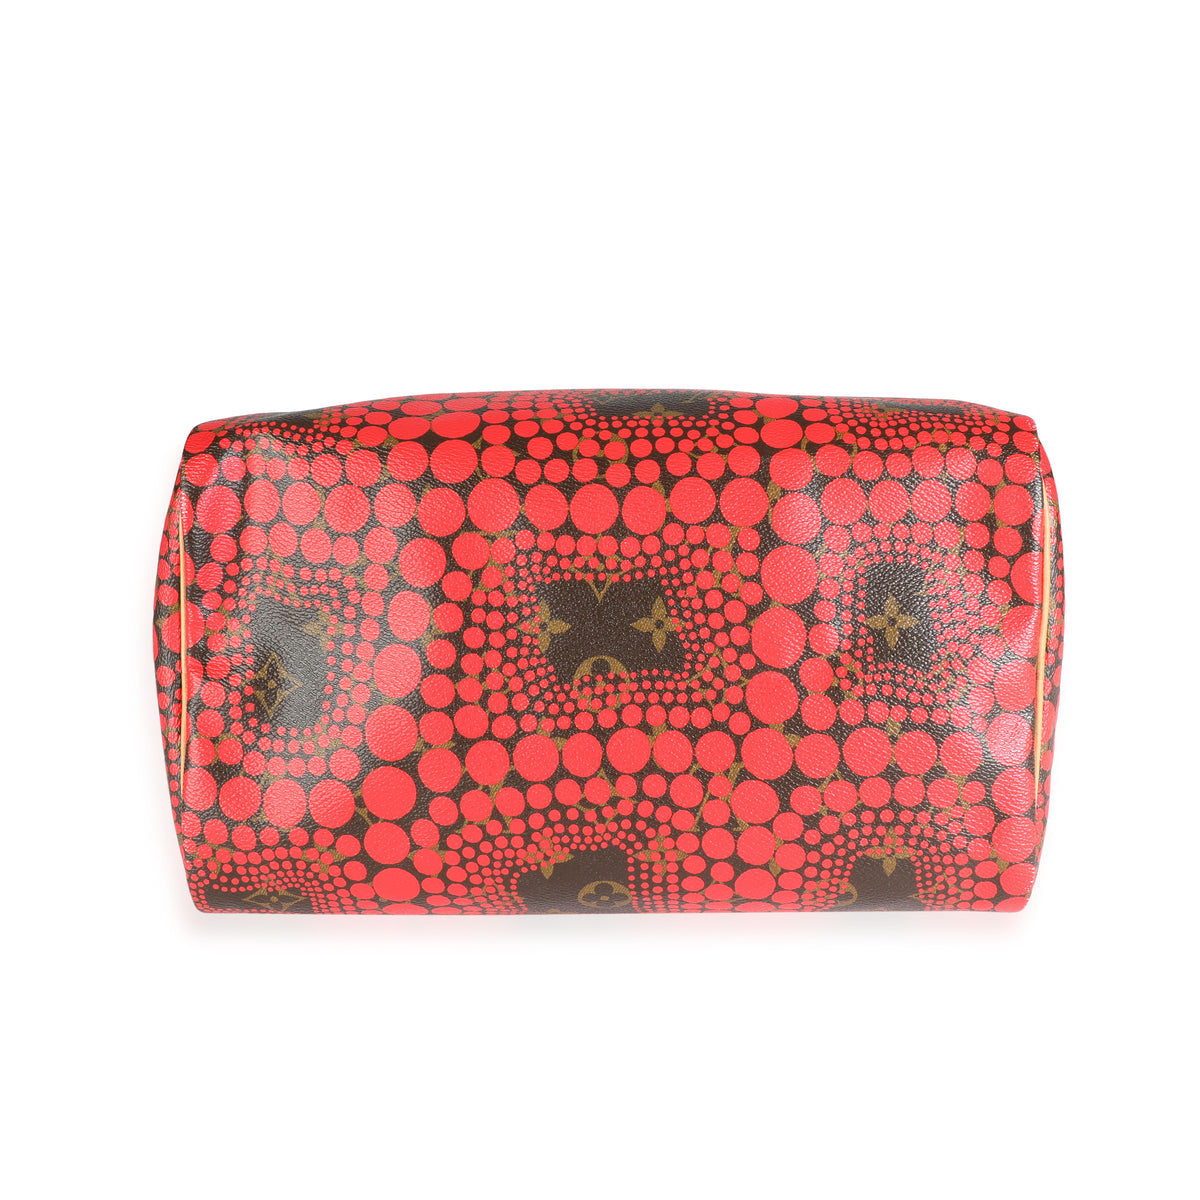 Yayoi Kusama x Louis Vuitton Red EPI Leather Infinity Dots Alma Bb